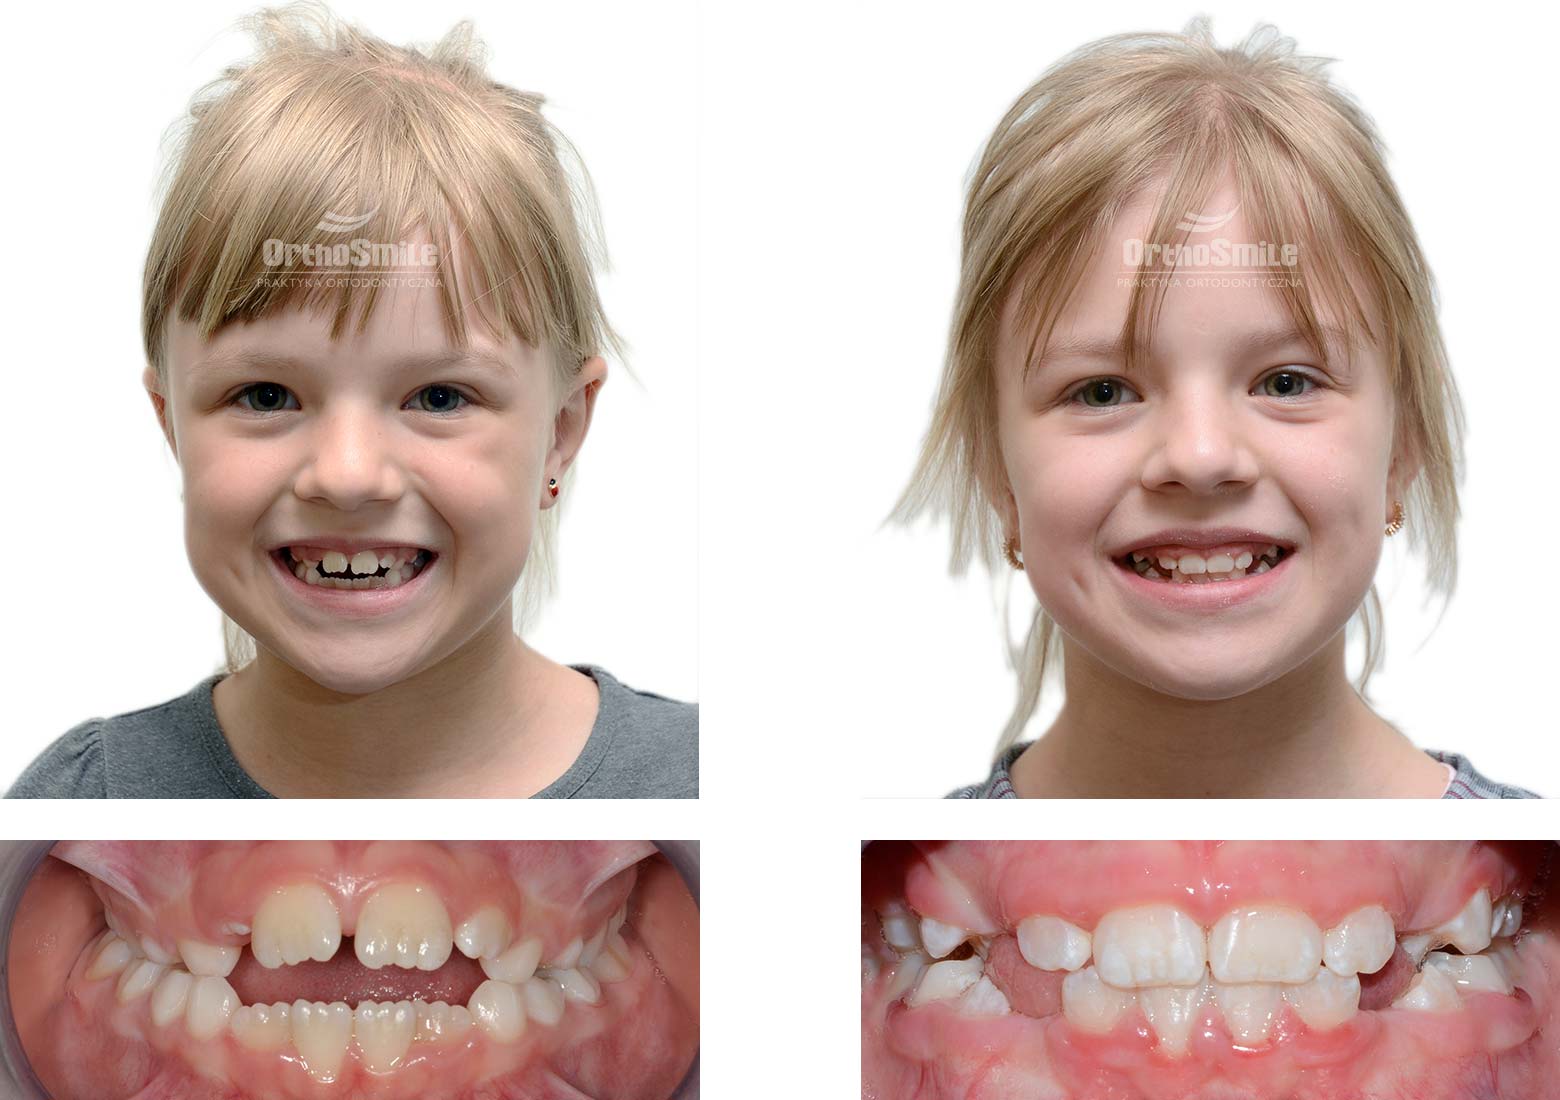 Dziewięcioletnia pacjentka ze zgryzem otwartym, leczona fragmentarycznym aparatem stałym. Leczenie ortodontyczne dzieci – metamorfozy. Praktyka Ortodontyczna Orthosmile, Wrocław